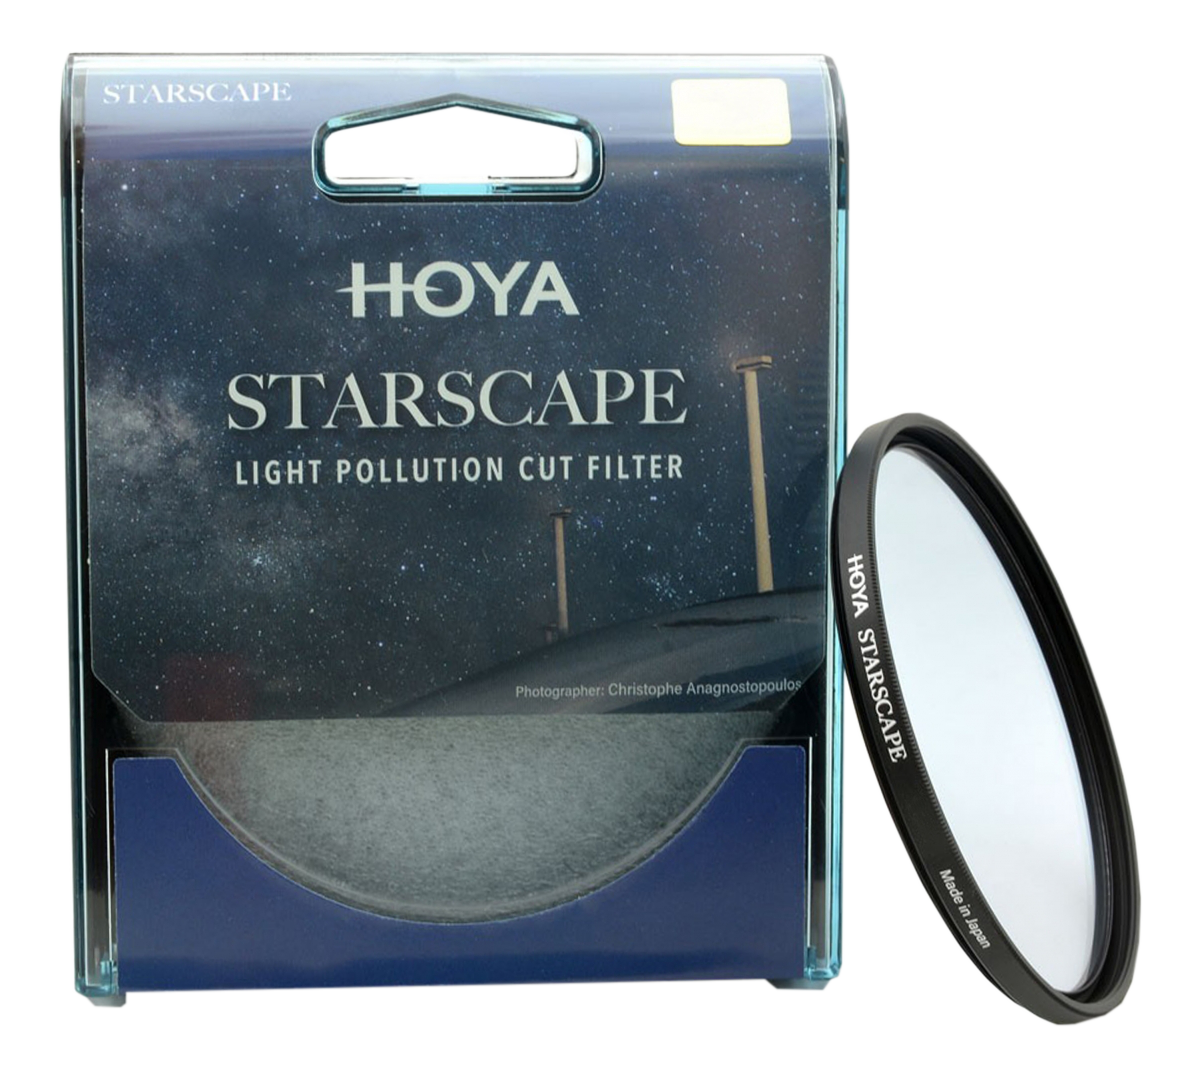 HOYA STARSCAPE 49mm - Filter (Schwarz)